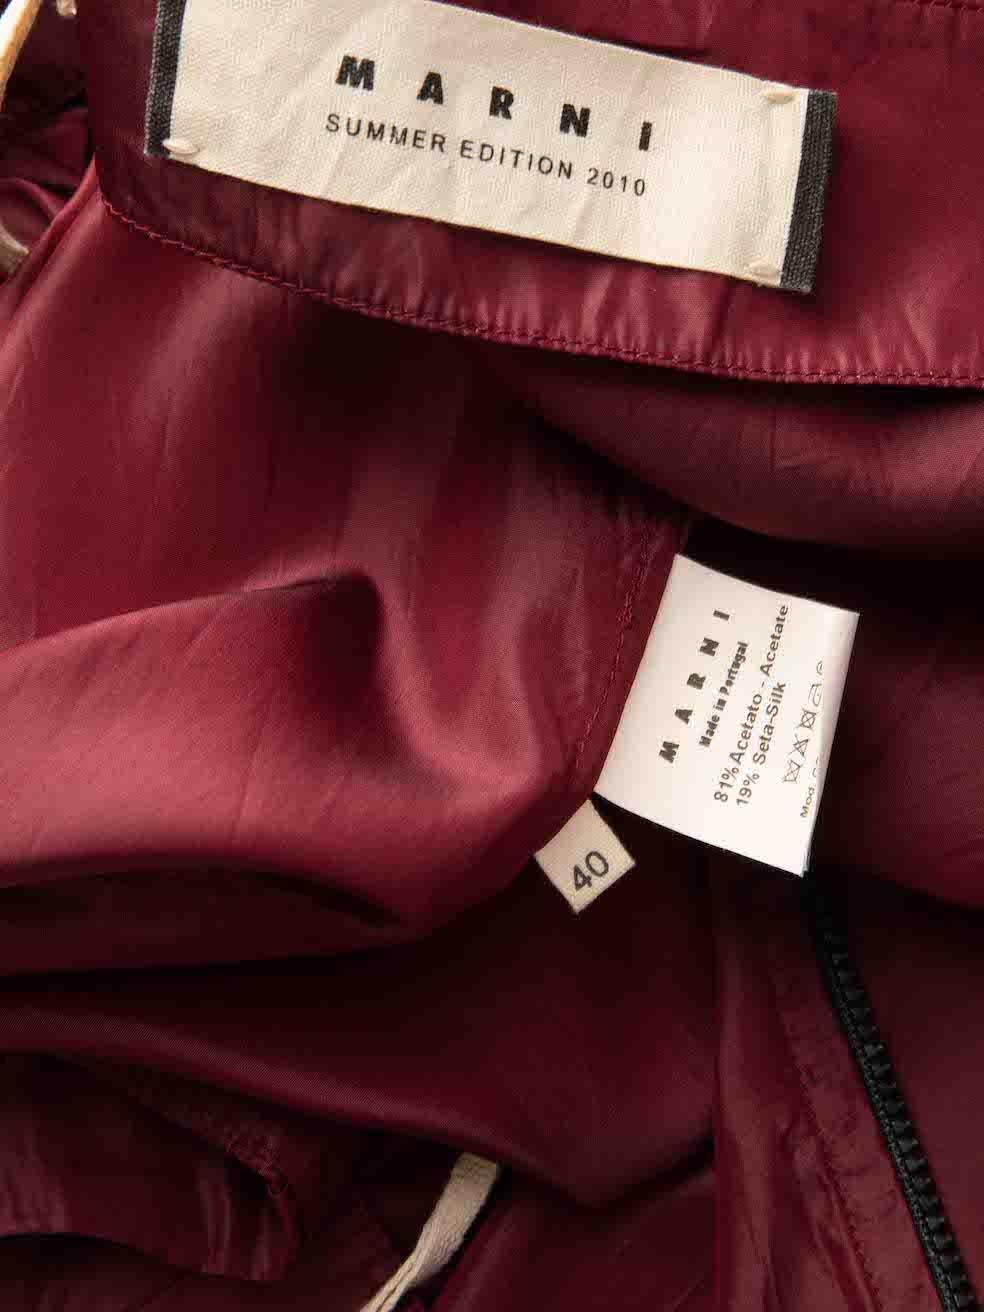 Marni Summer 2010 Burgundy Drape Detail Skirt Size S For Sale 1